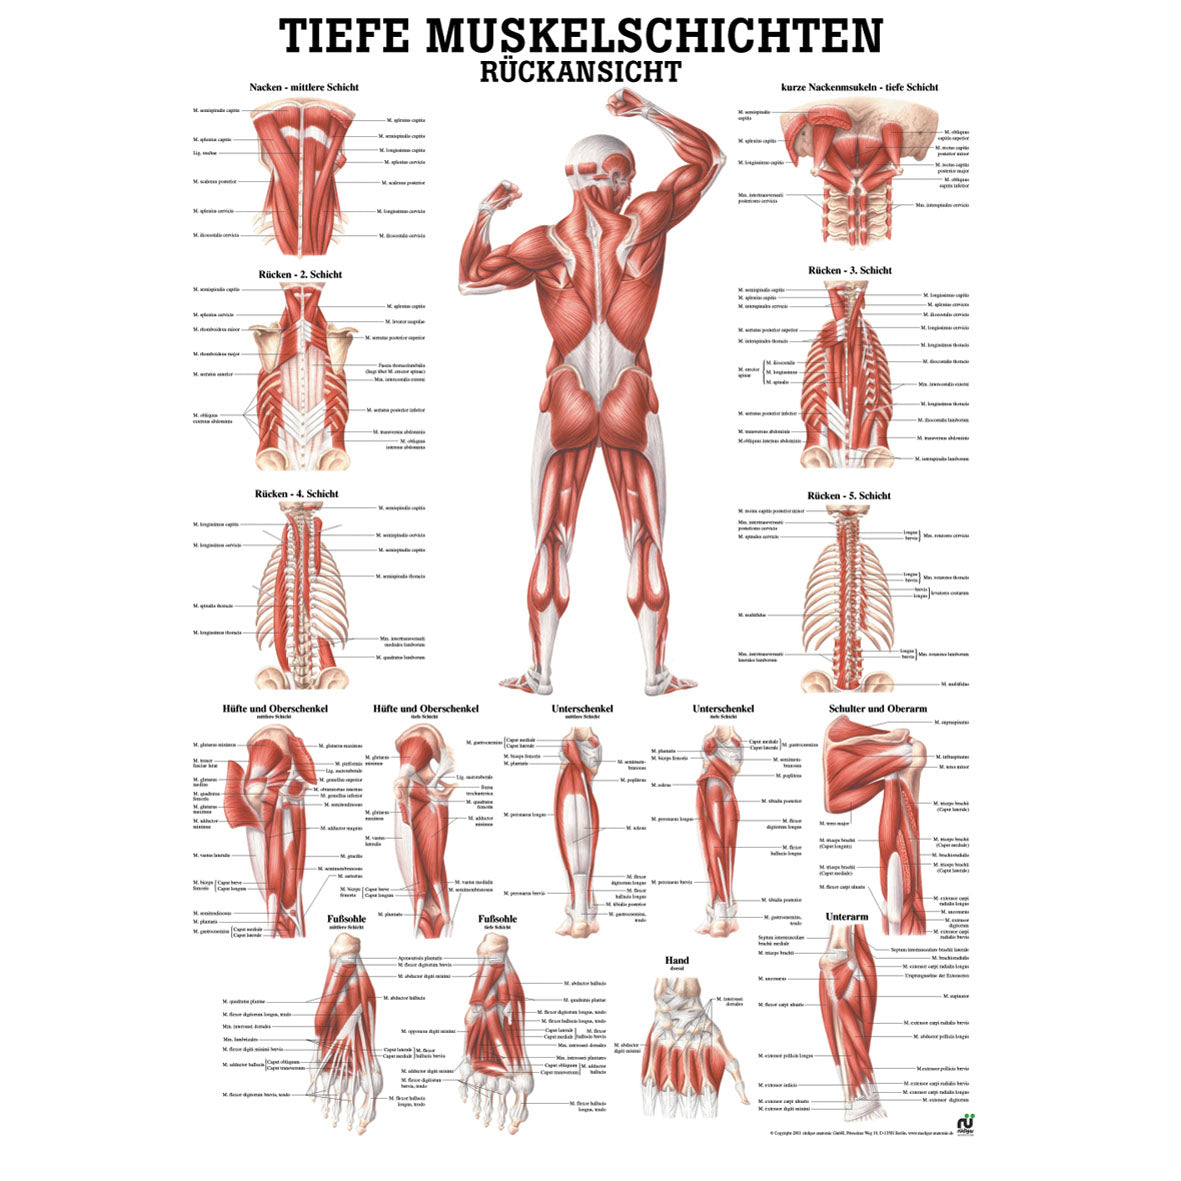 Anatomisches Poster "Tiefe Muskelschichten - Rückansicht"